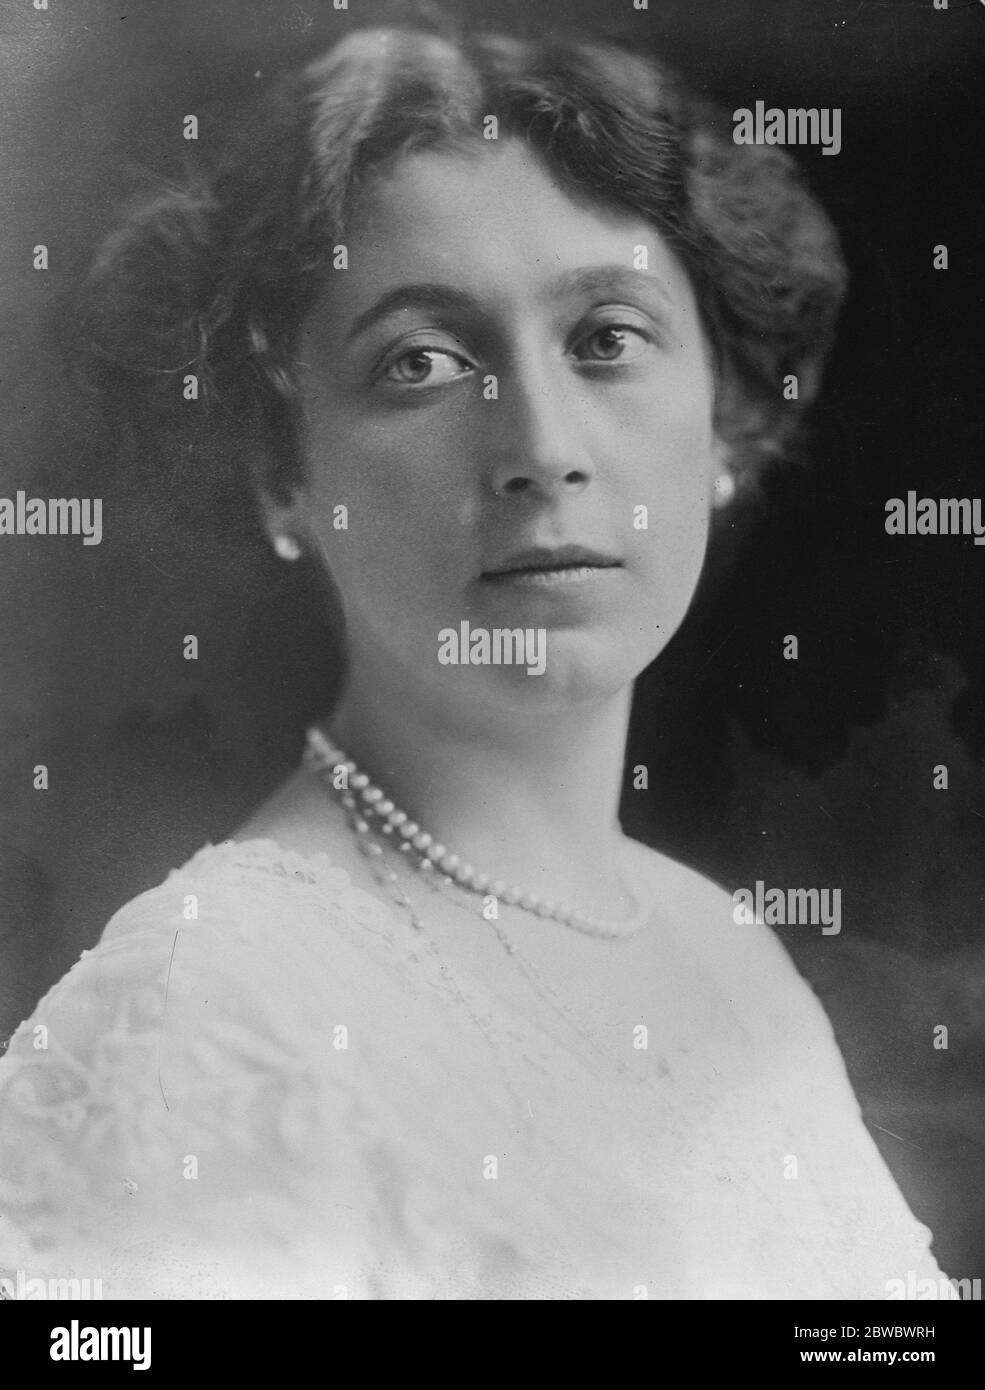 Comtesse condamnée à 12 mois d'emprisonnement . Une étude de portrait frappante de la comtesse Elinor von Bothmer , qui a été condamnée à 12 mois d'emprisonnement pour vol . 21 novembre 1925 Banque D'Images